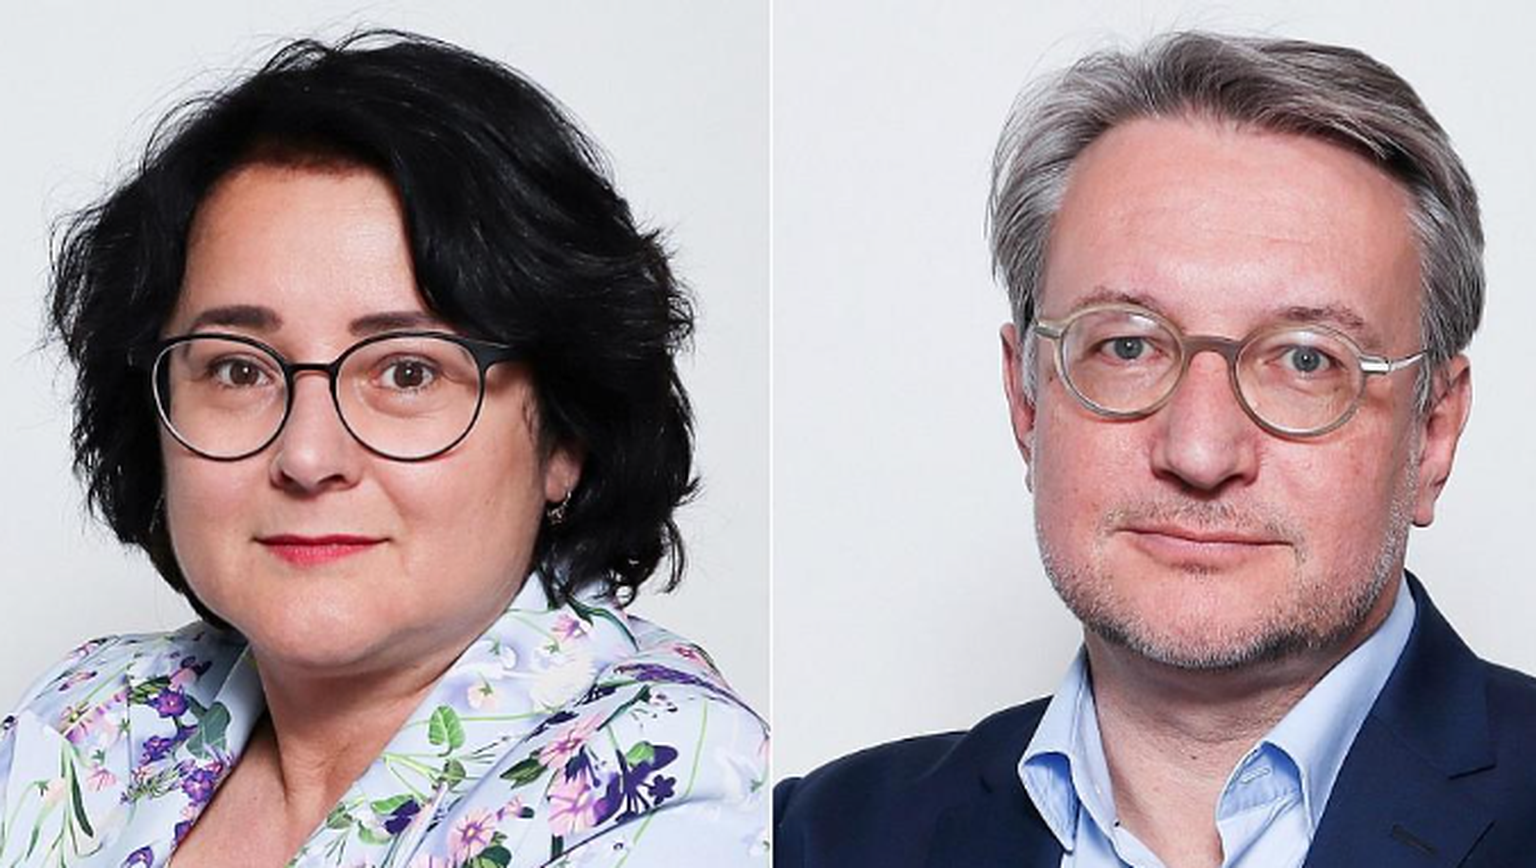 Sermîn Faki und Pascal Tischhauser arbeiteten acht, respektive sechs Jahre für das Politik-Ressort des Blick.